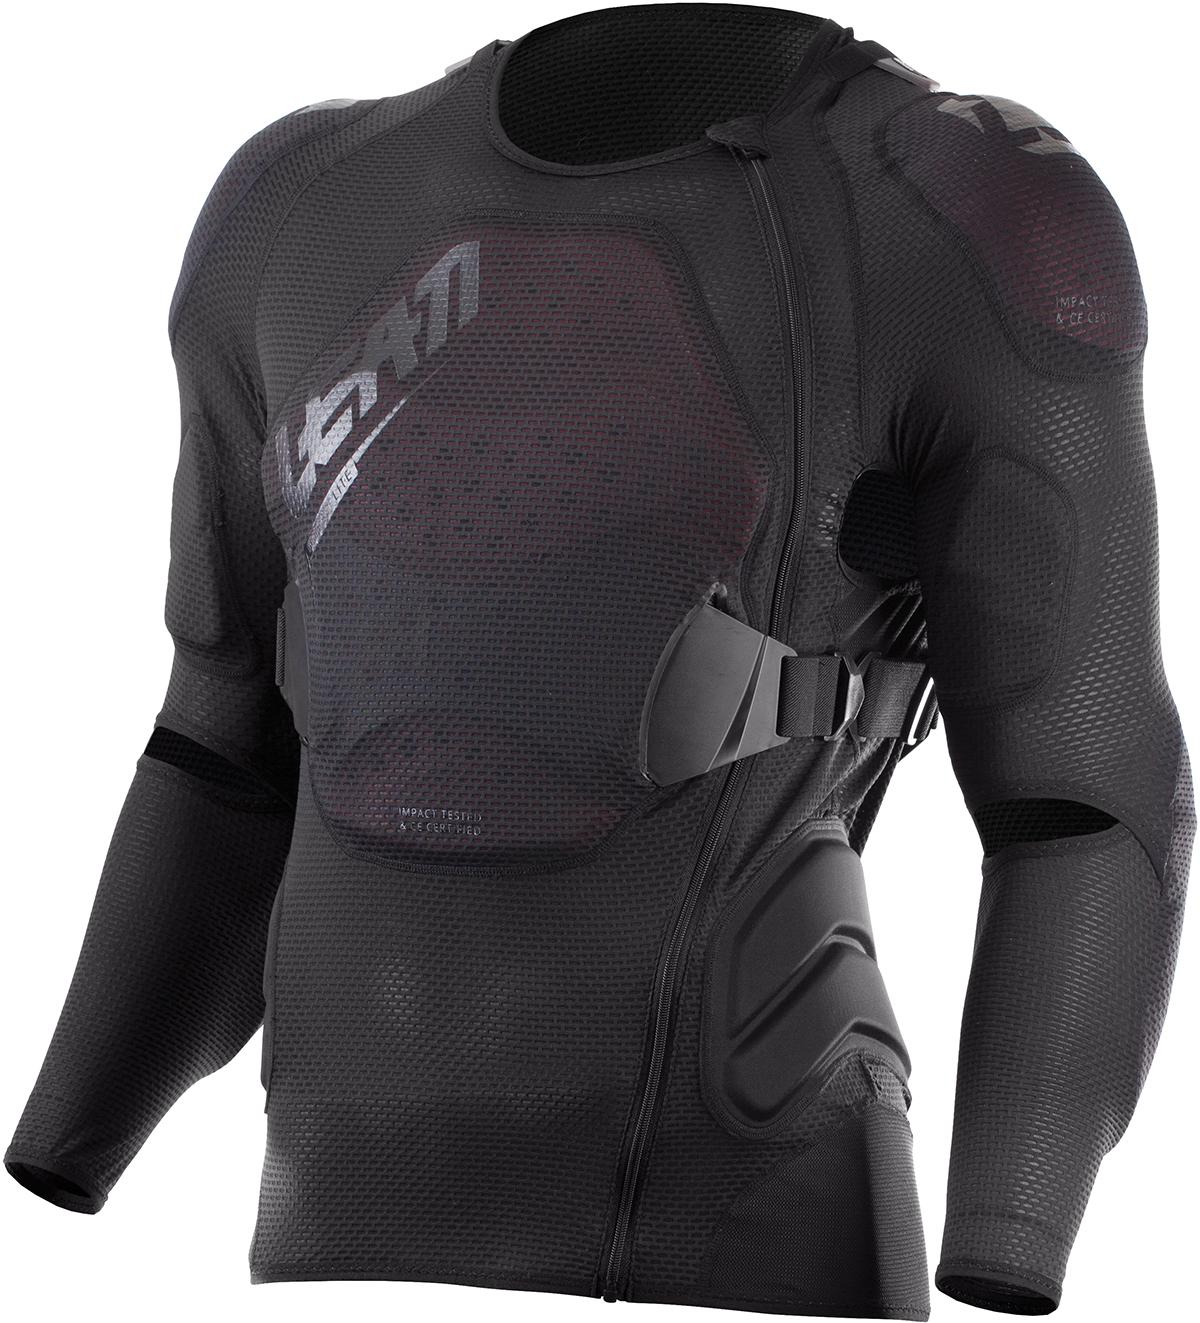 Leatt Body Protector 3df Airfit Lite - Black